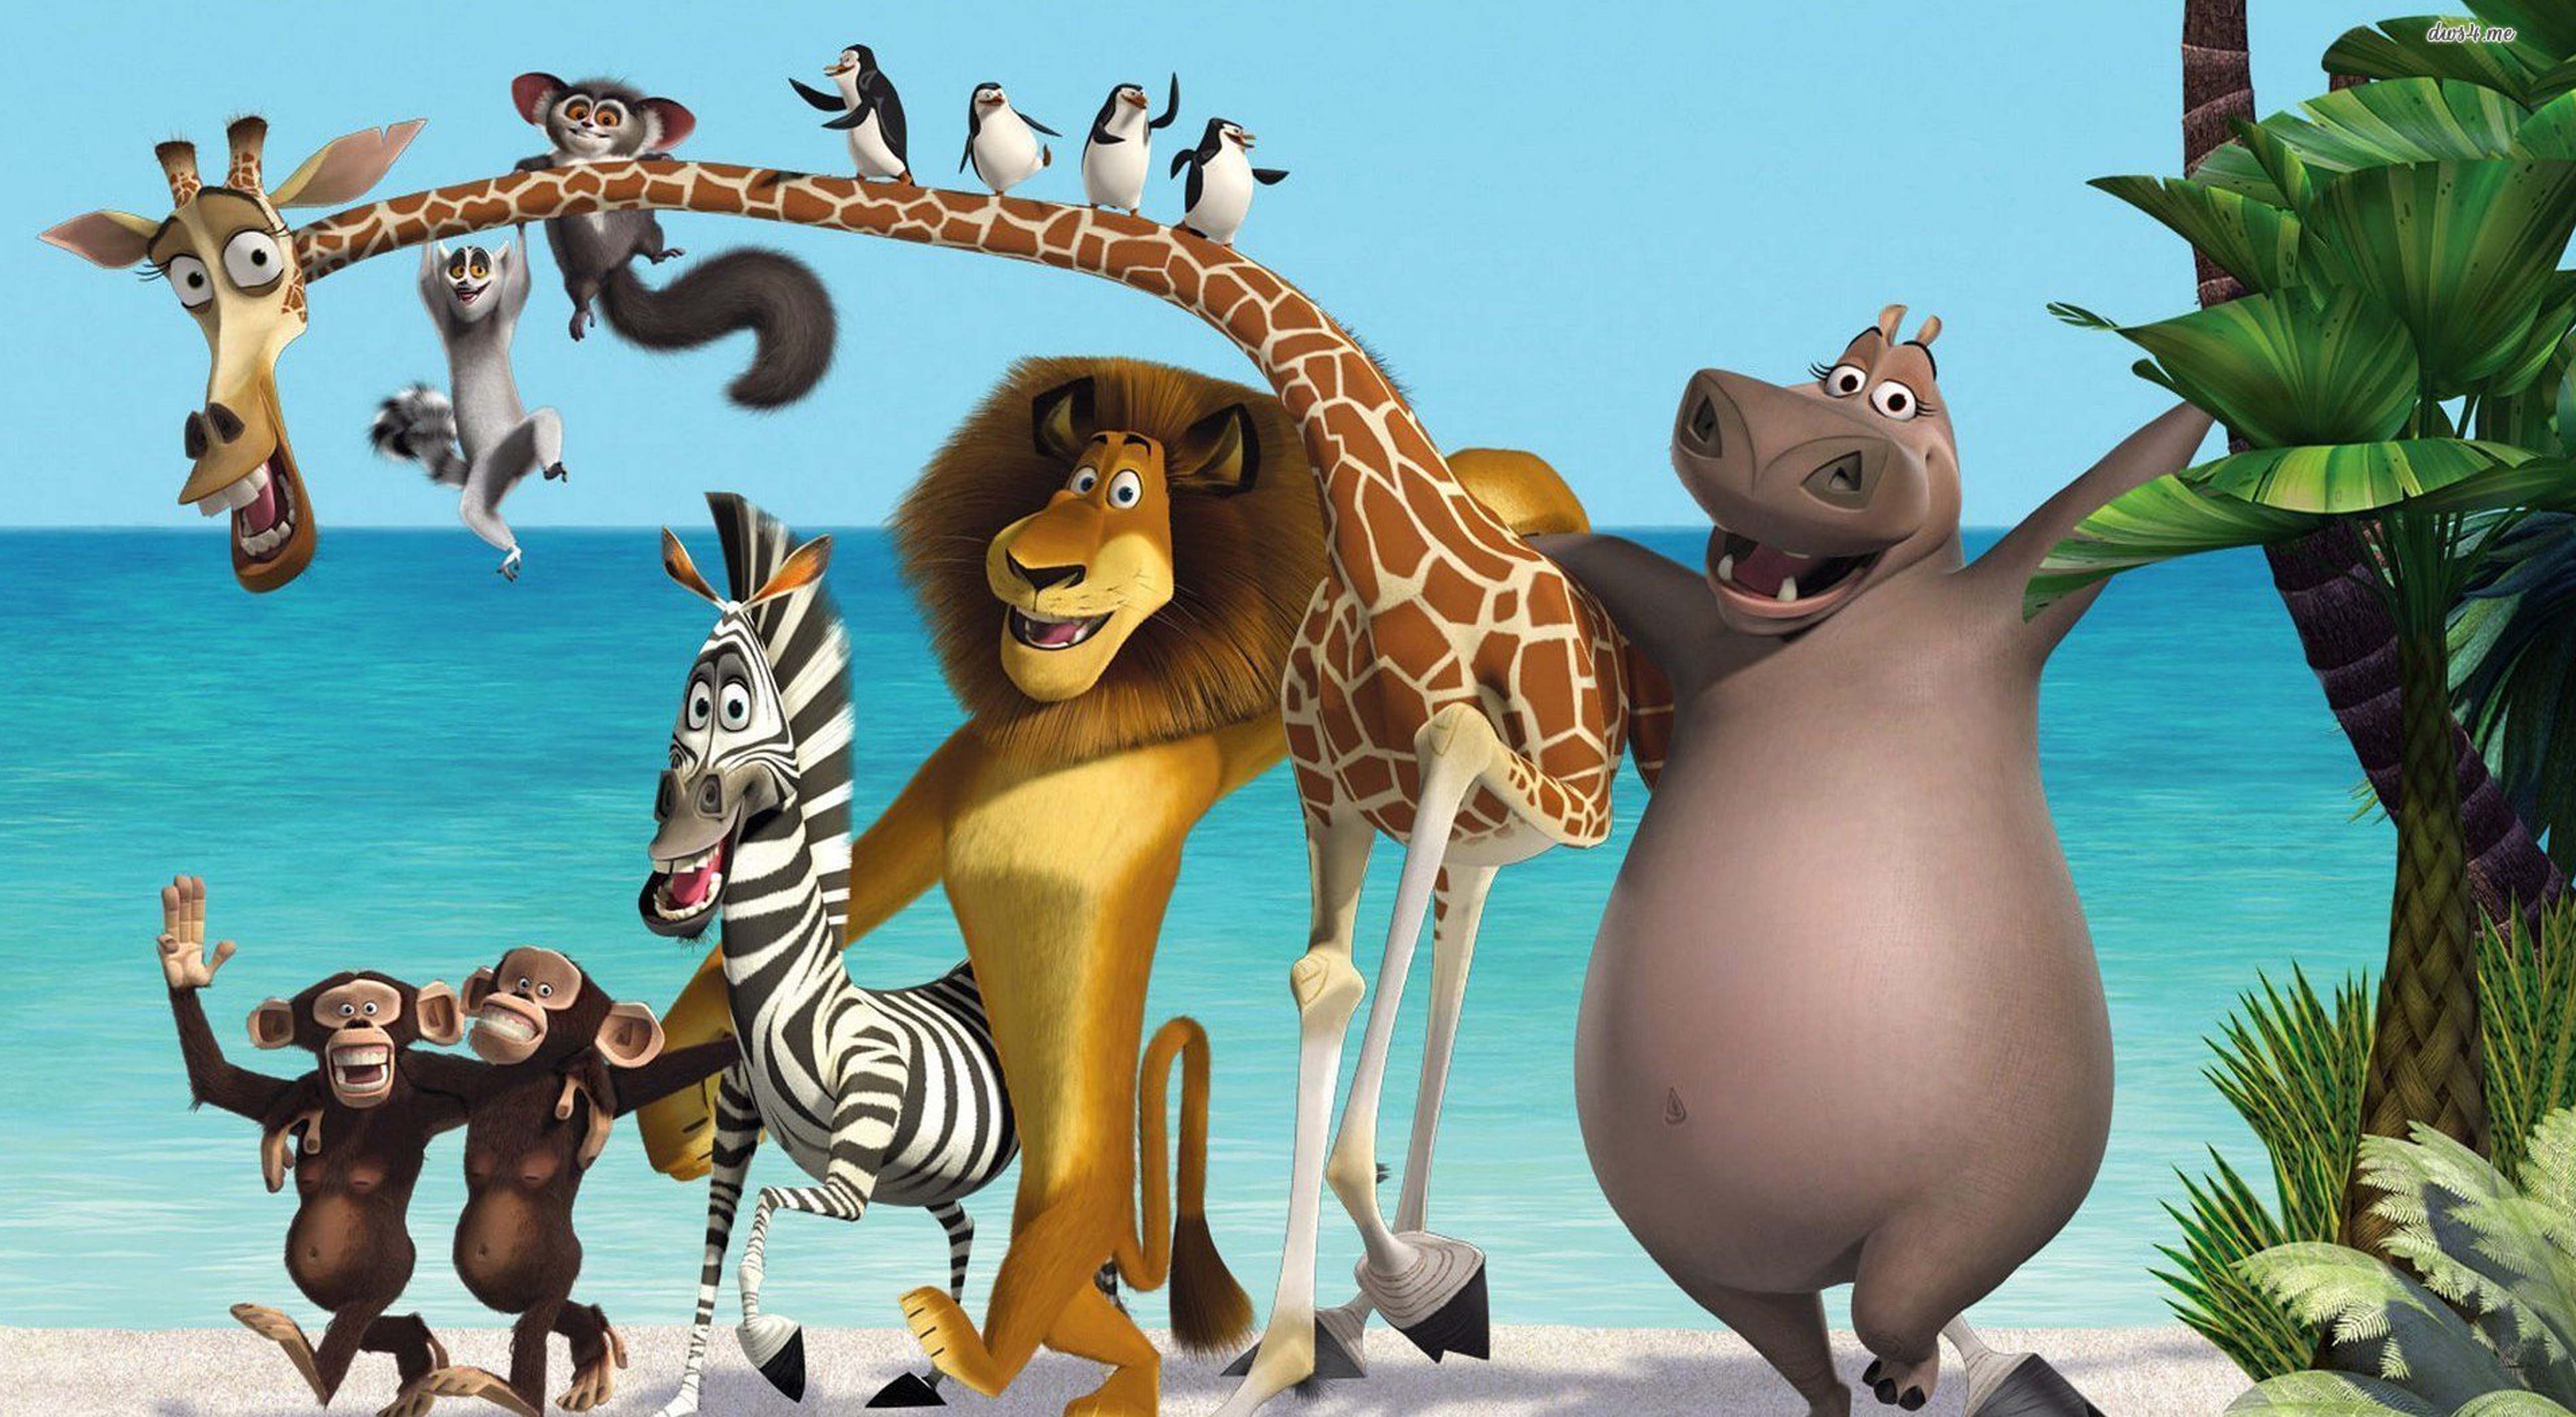 تماشا و دانلود انیمیشن ماداگاسکار Madagascar با اینترنت رایگان - دیجیتون